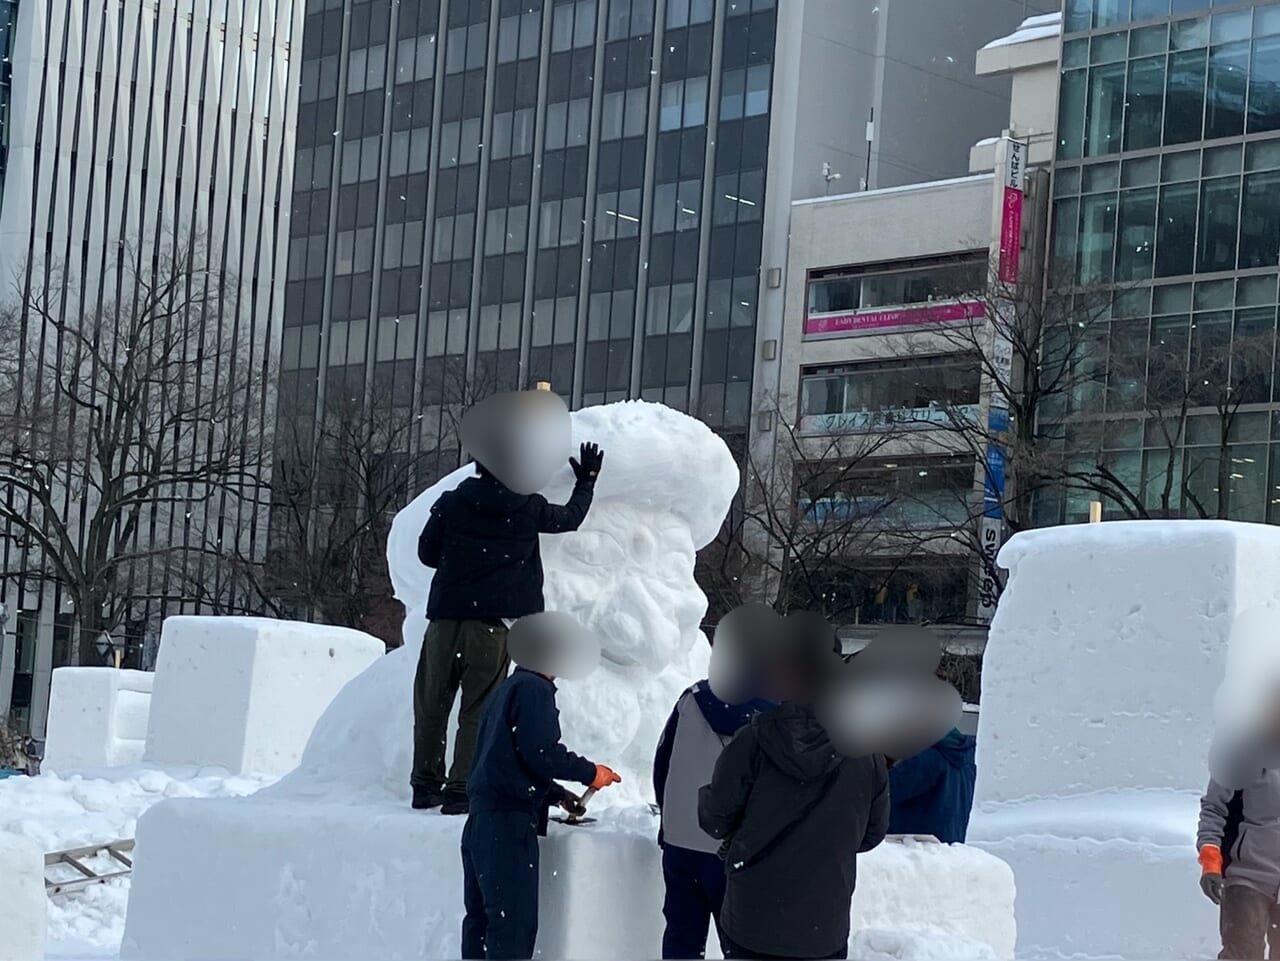 雪まつりの雪像を製作している様子